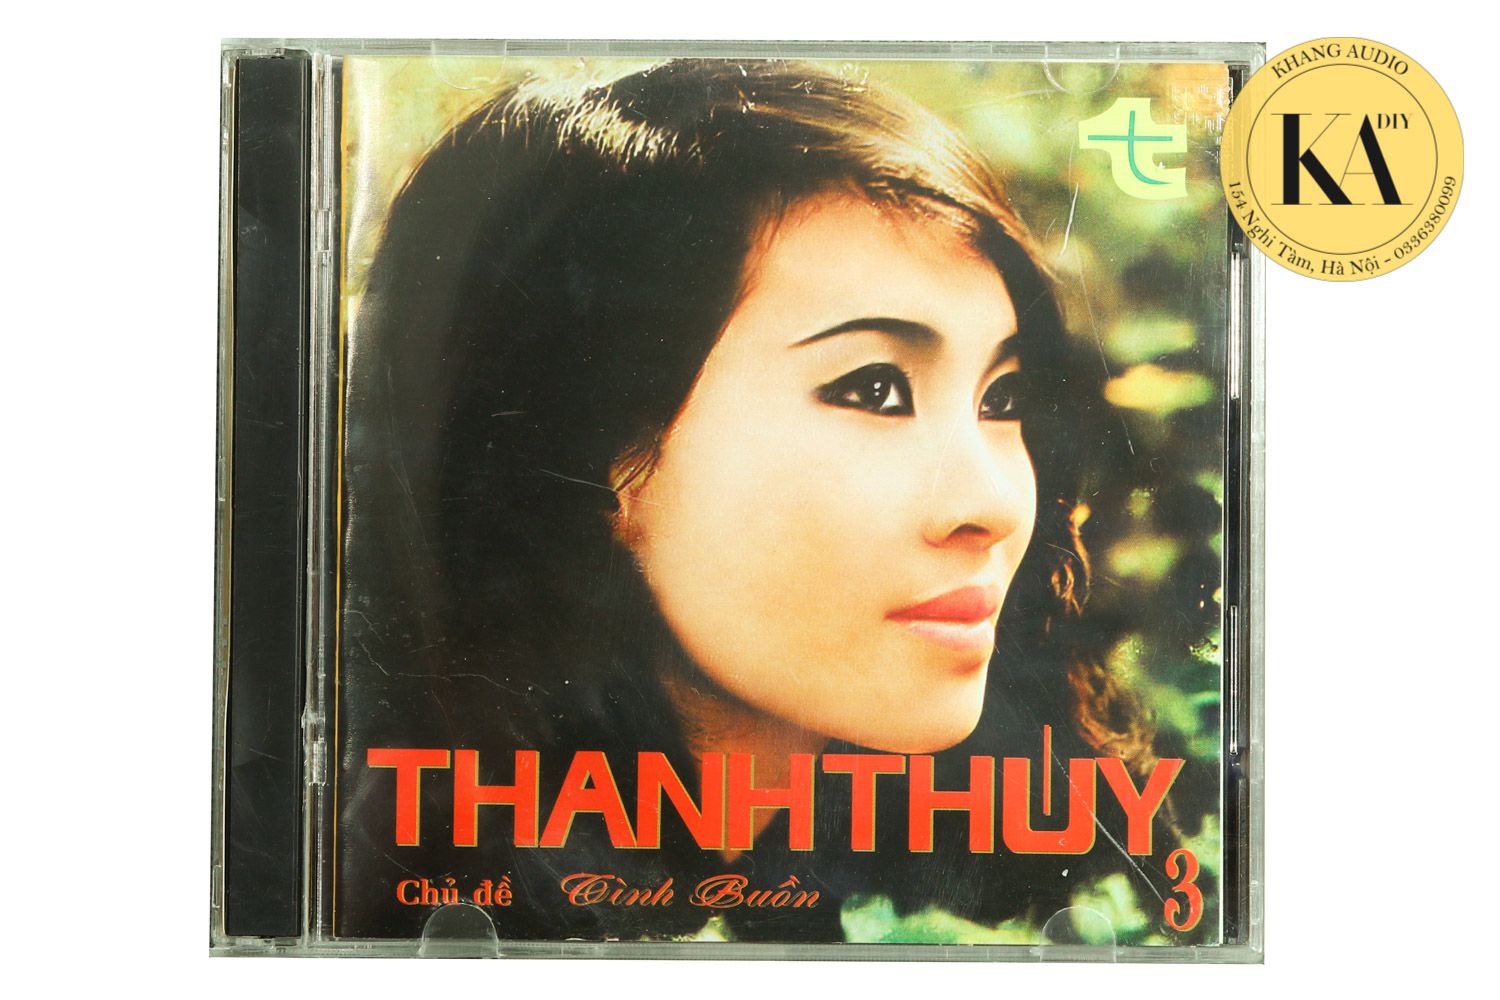 Tình buồn - Thanh Thúy 3 Khang Audio 0336380099